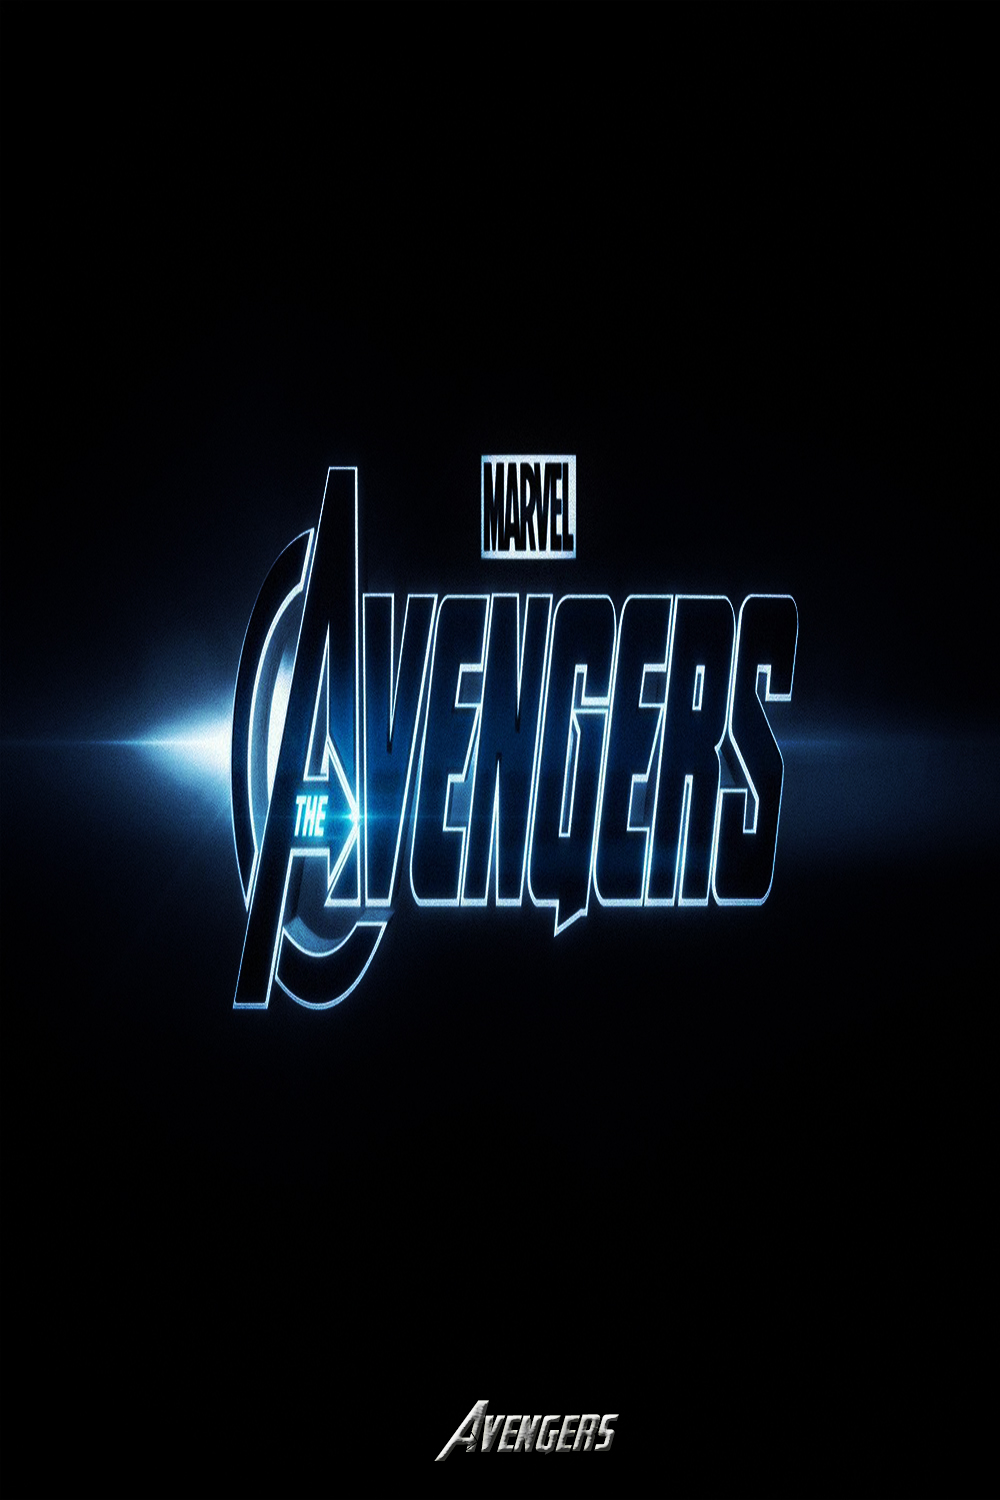 Avengers Wallpaper 4k,avengers Wallpaper For Mobile,avengers - Darkness - HD Wallpaper 